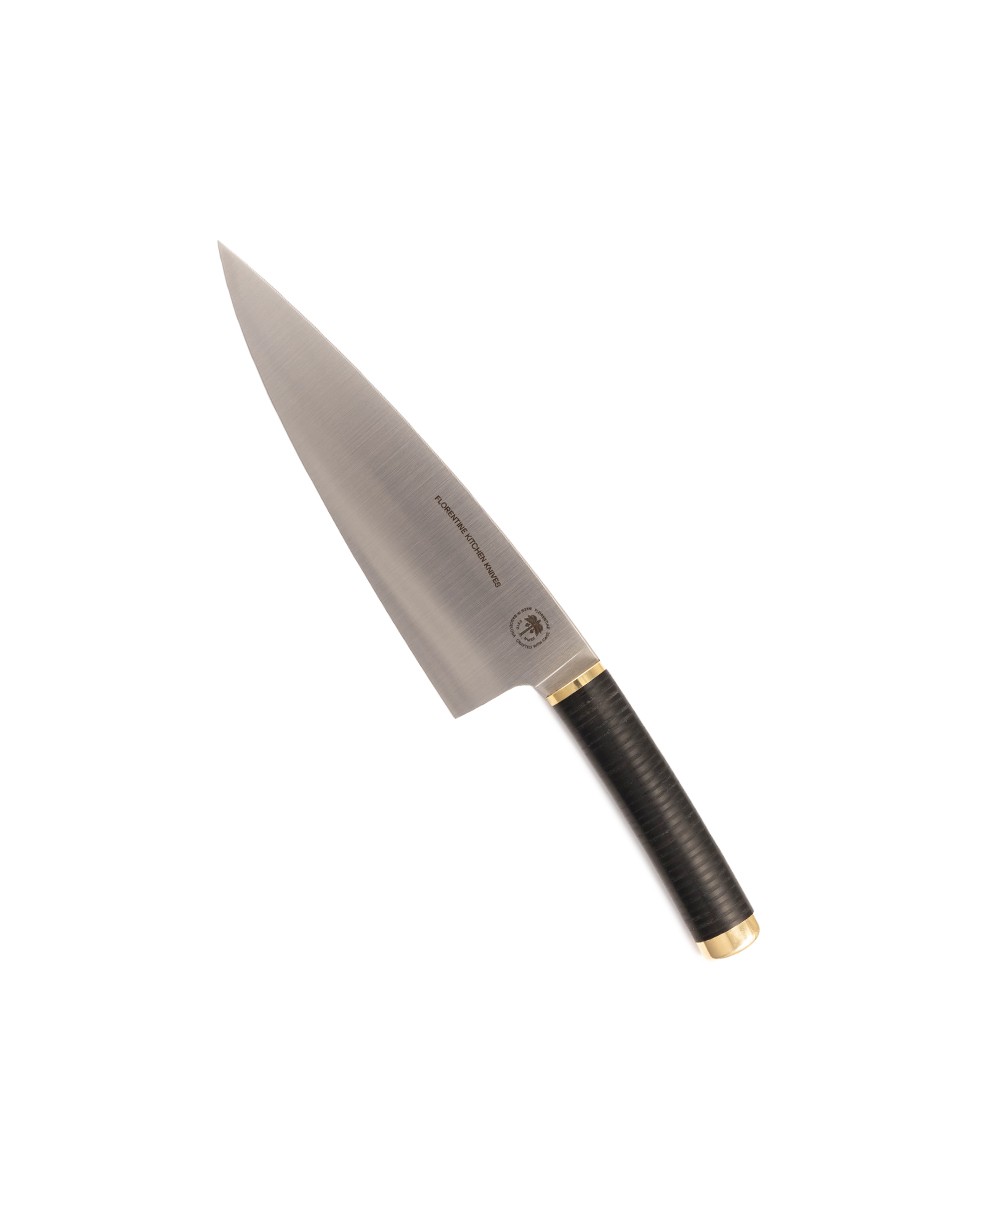 Produktbild des Florentine Chef Knife in black von Florentine Kitchen Knives im RAUM concept store 